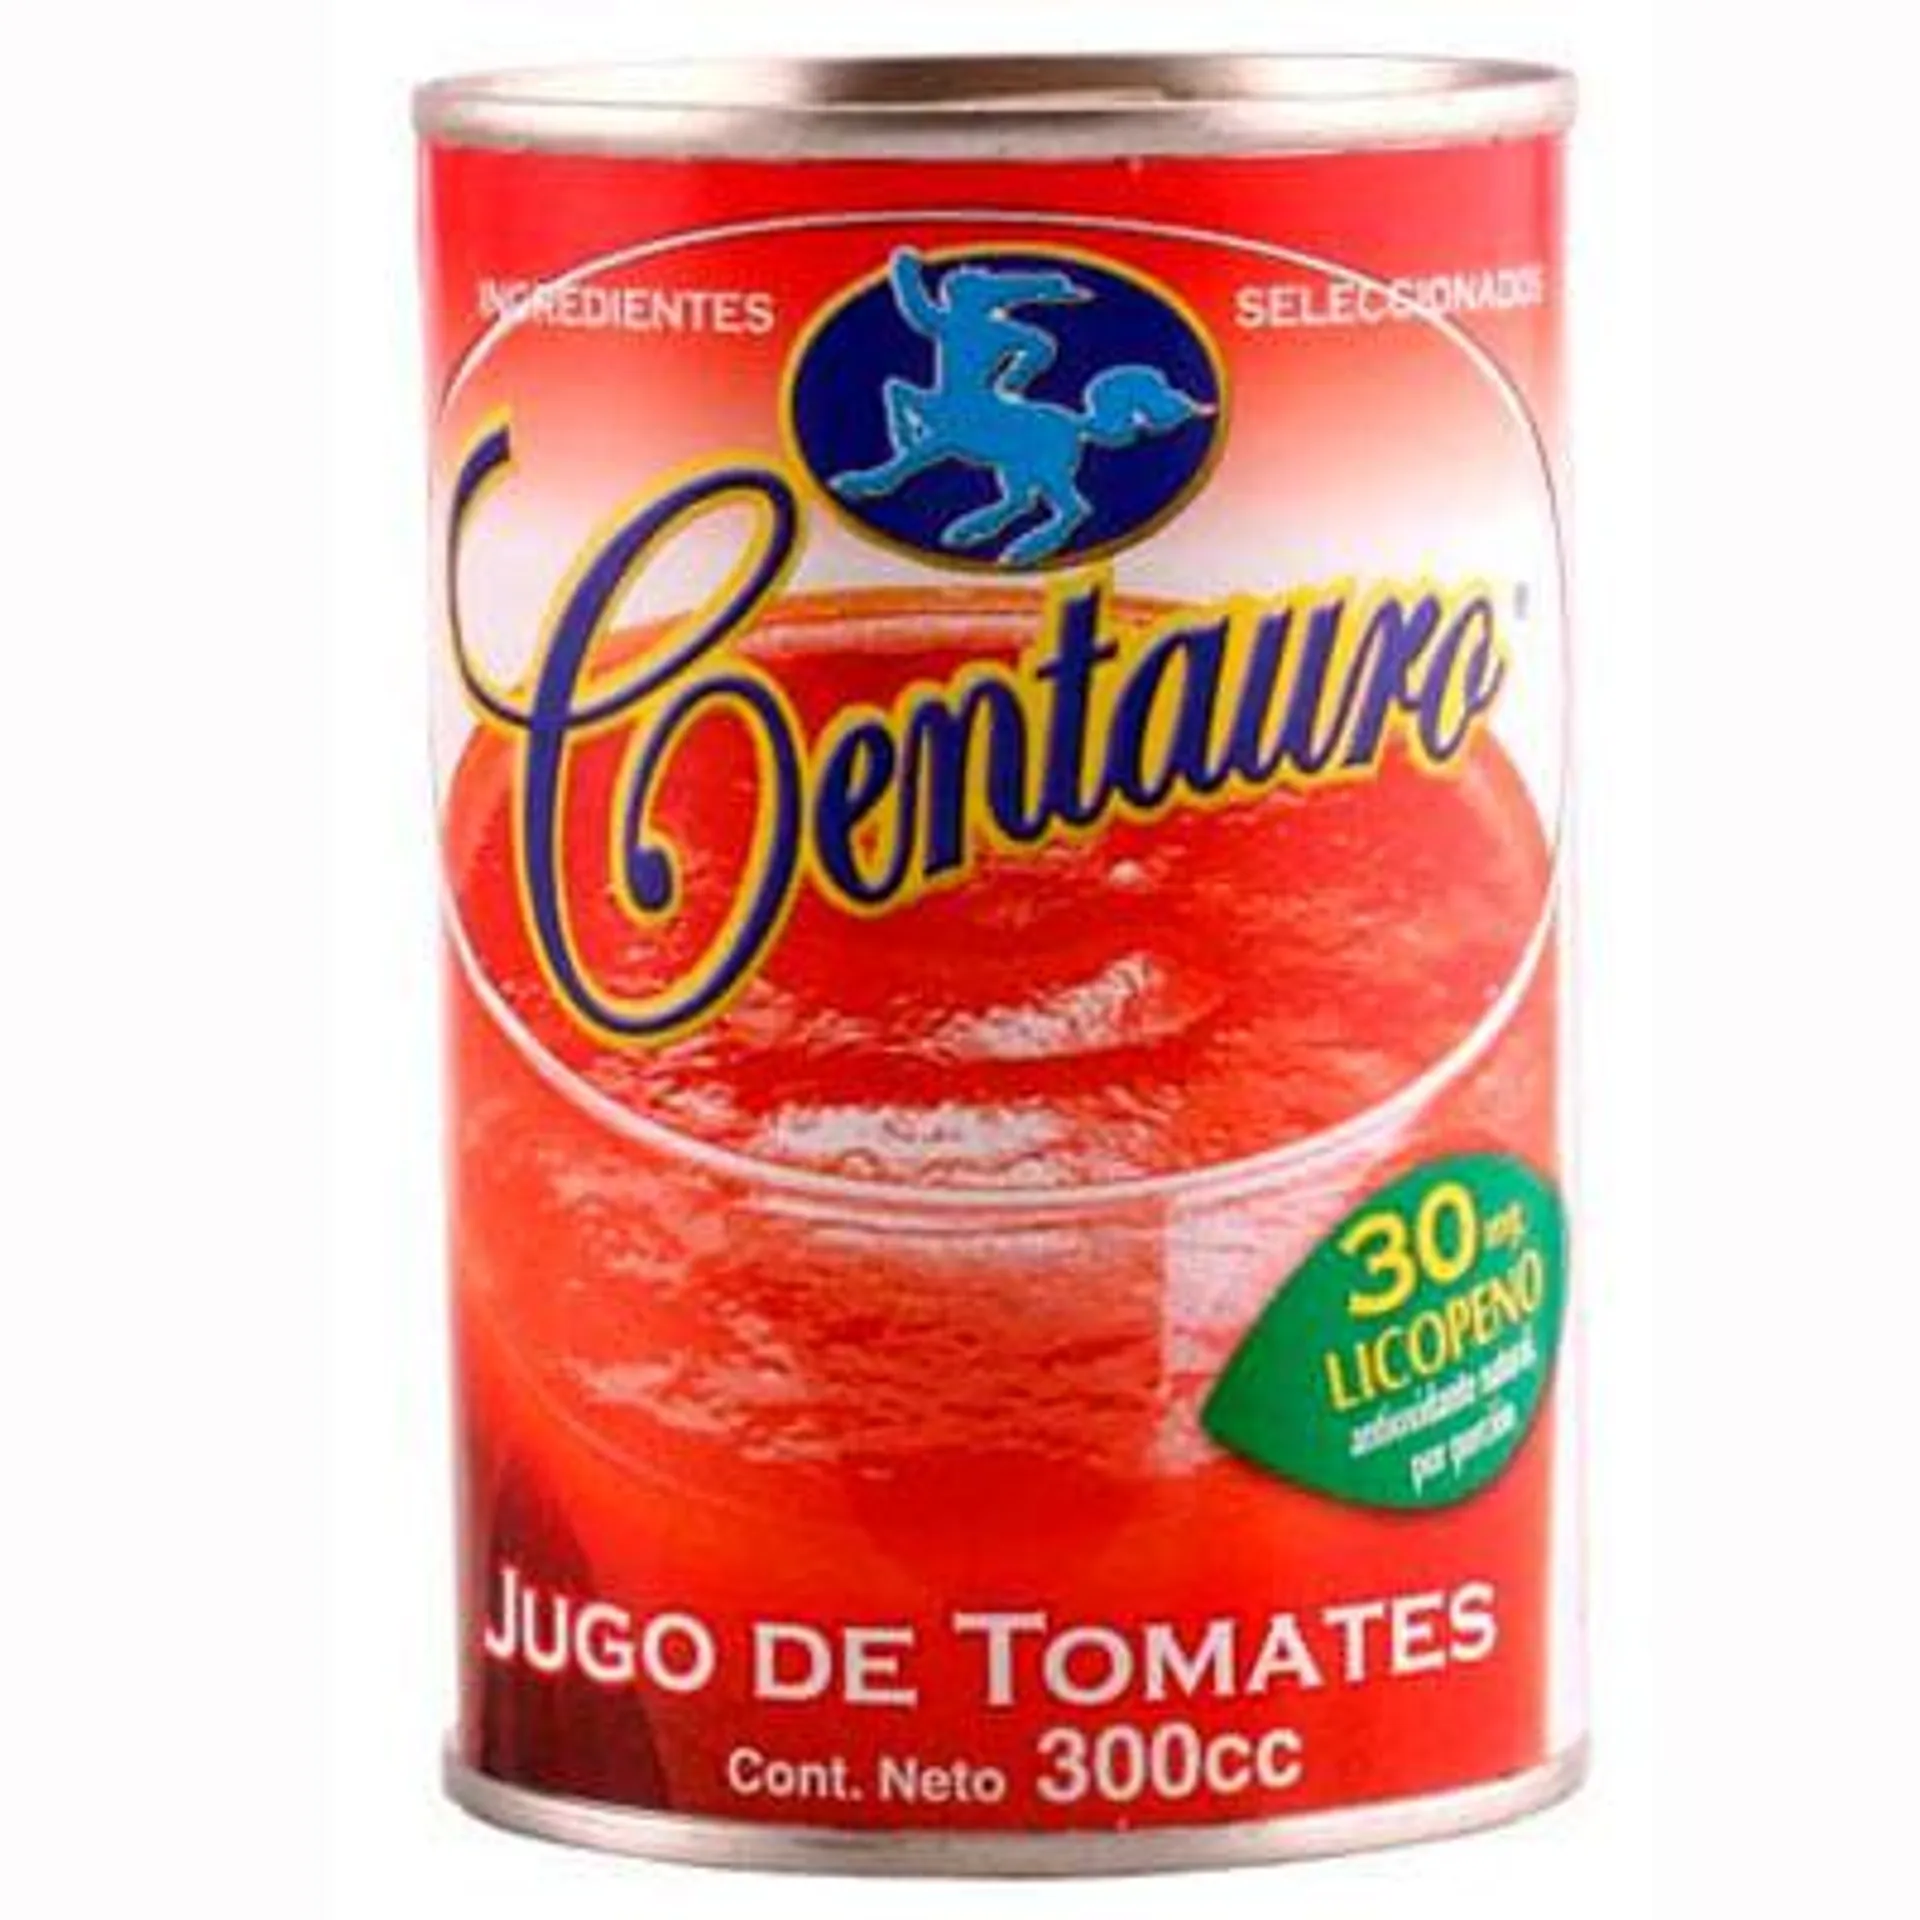 Jugo de tomate Centauro lata 300 g